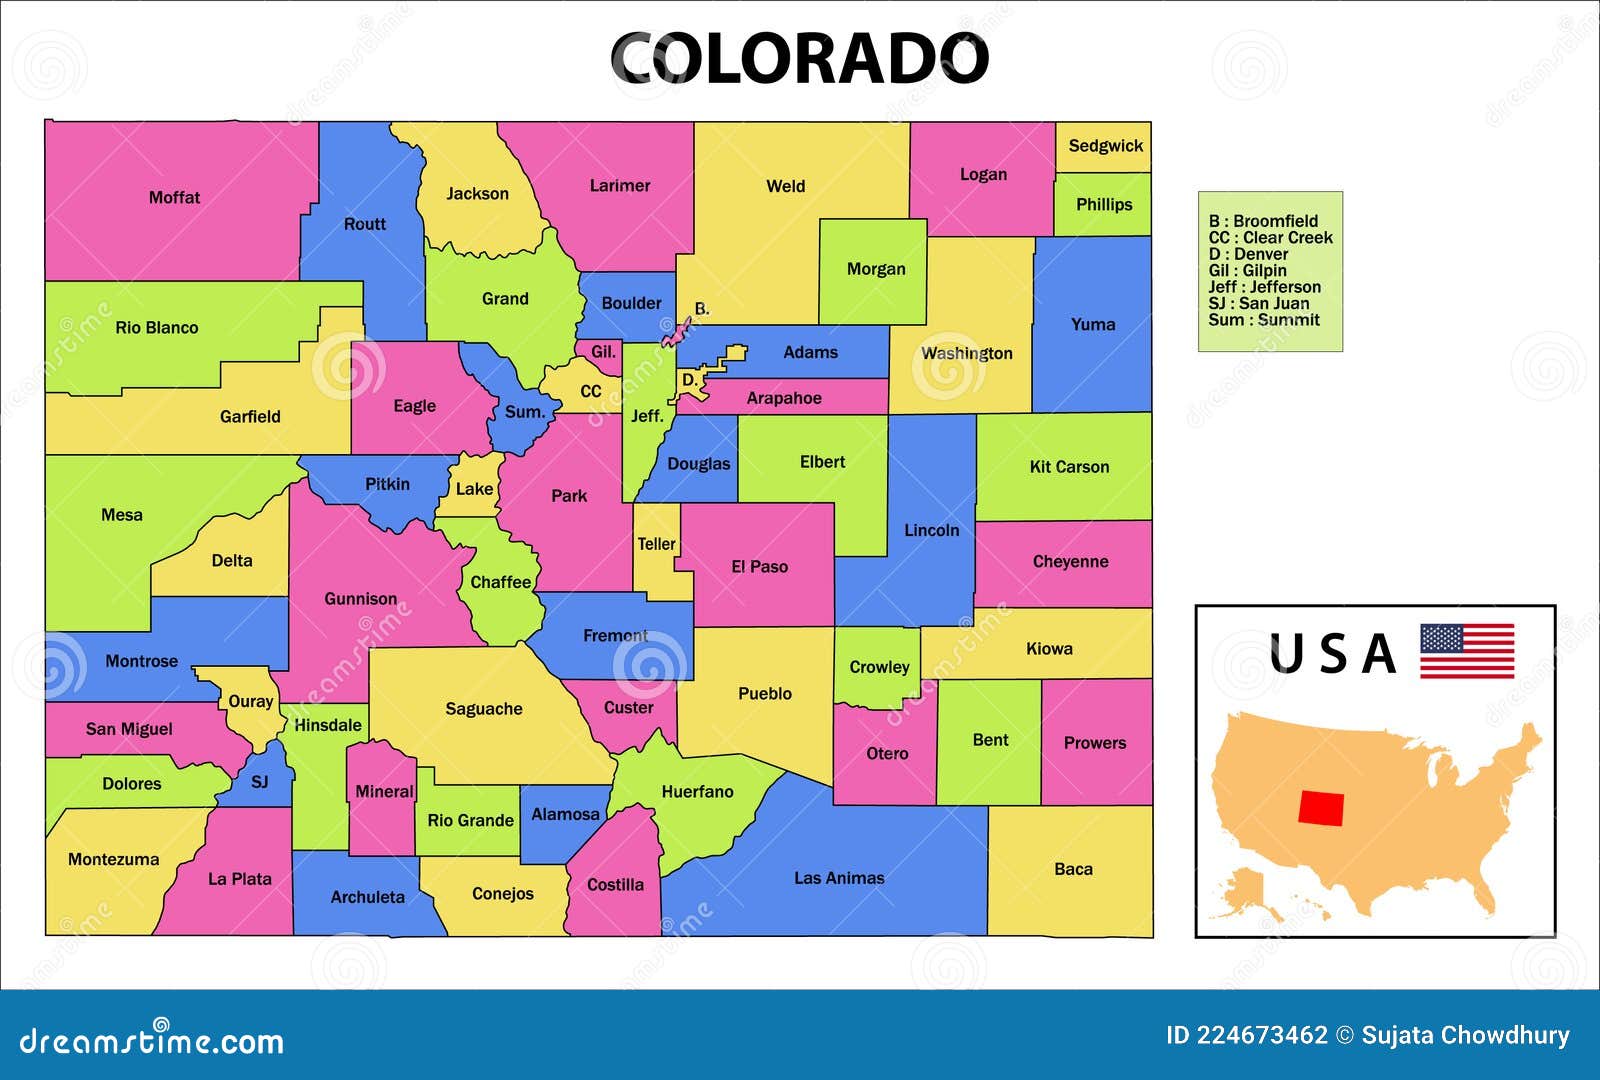 Colorado Political Map